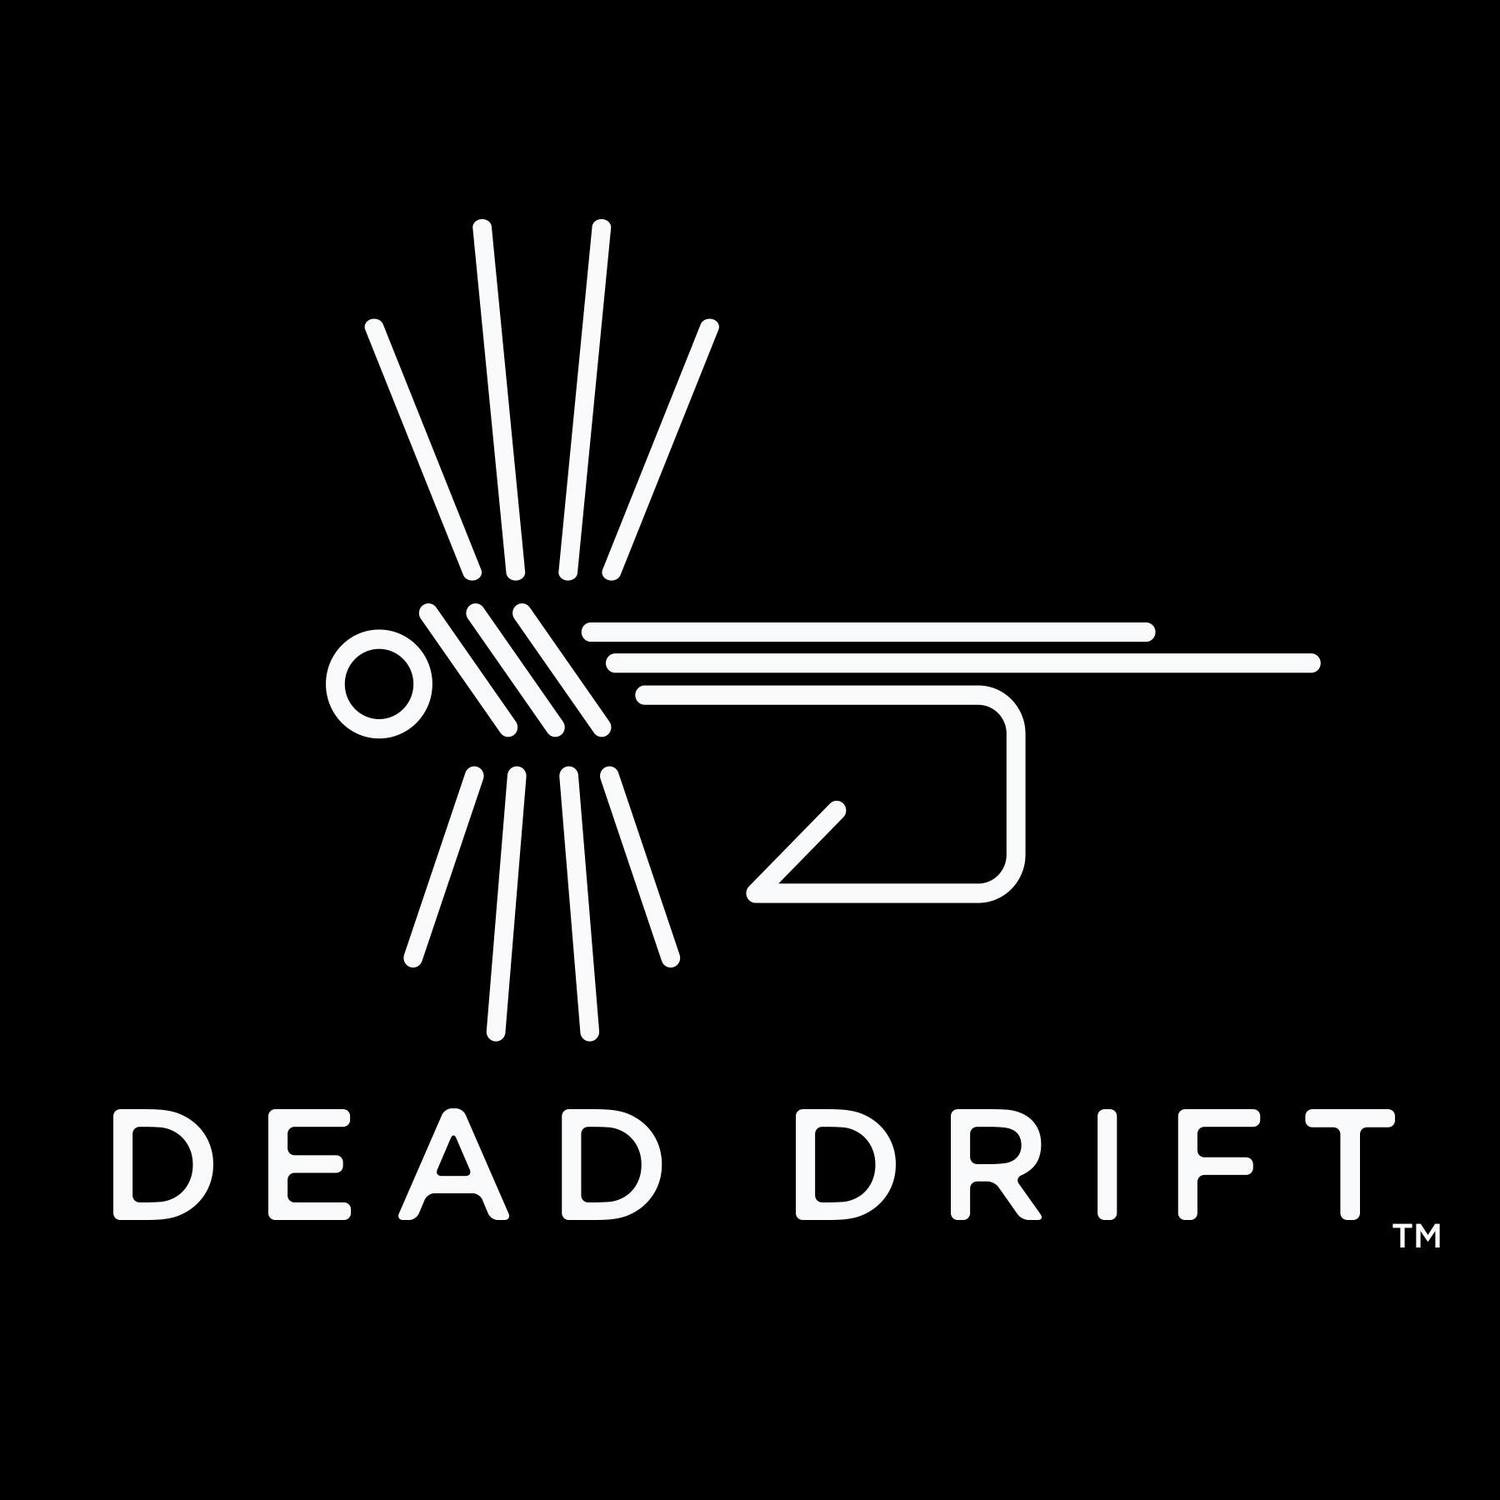 www.deaddriftfly.com